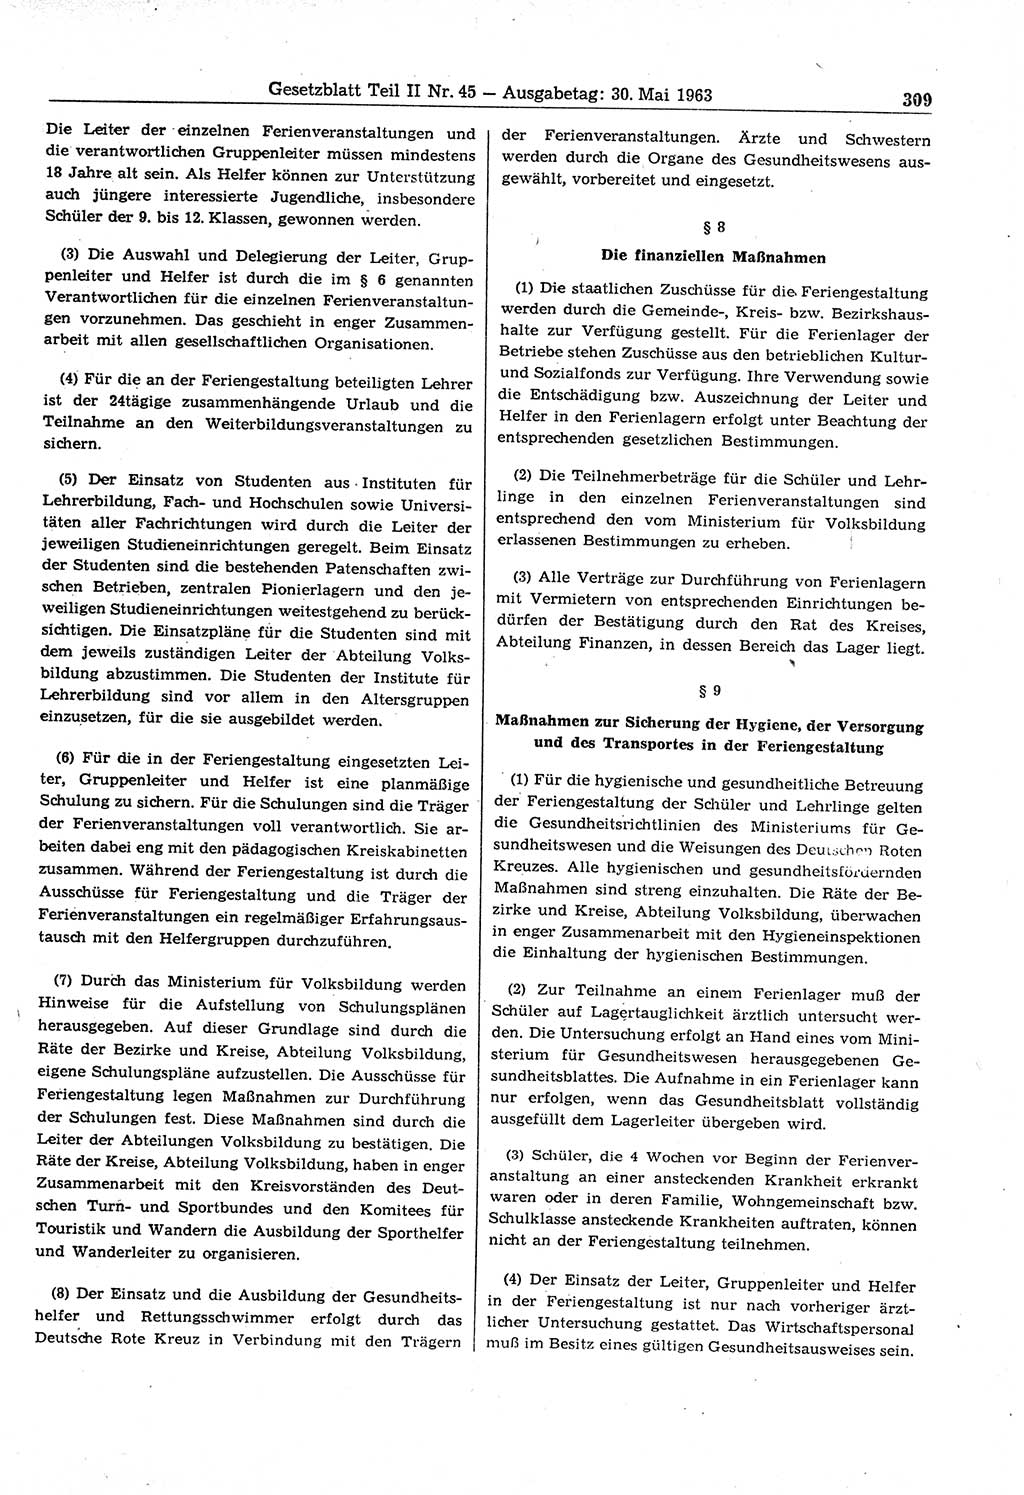 Gesetzblatt (GBl.) der Deutschen Demokratischen Republik (DDR) Teil ⅠⅠ 1963, Seite 309 (GBl. DDR ⅠⅠ 1963, S. 309)